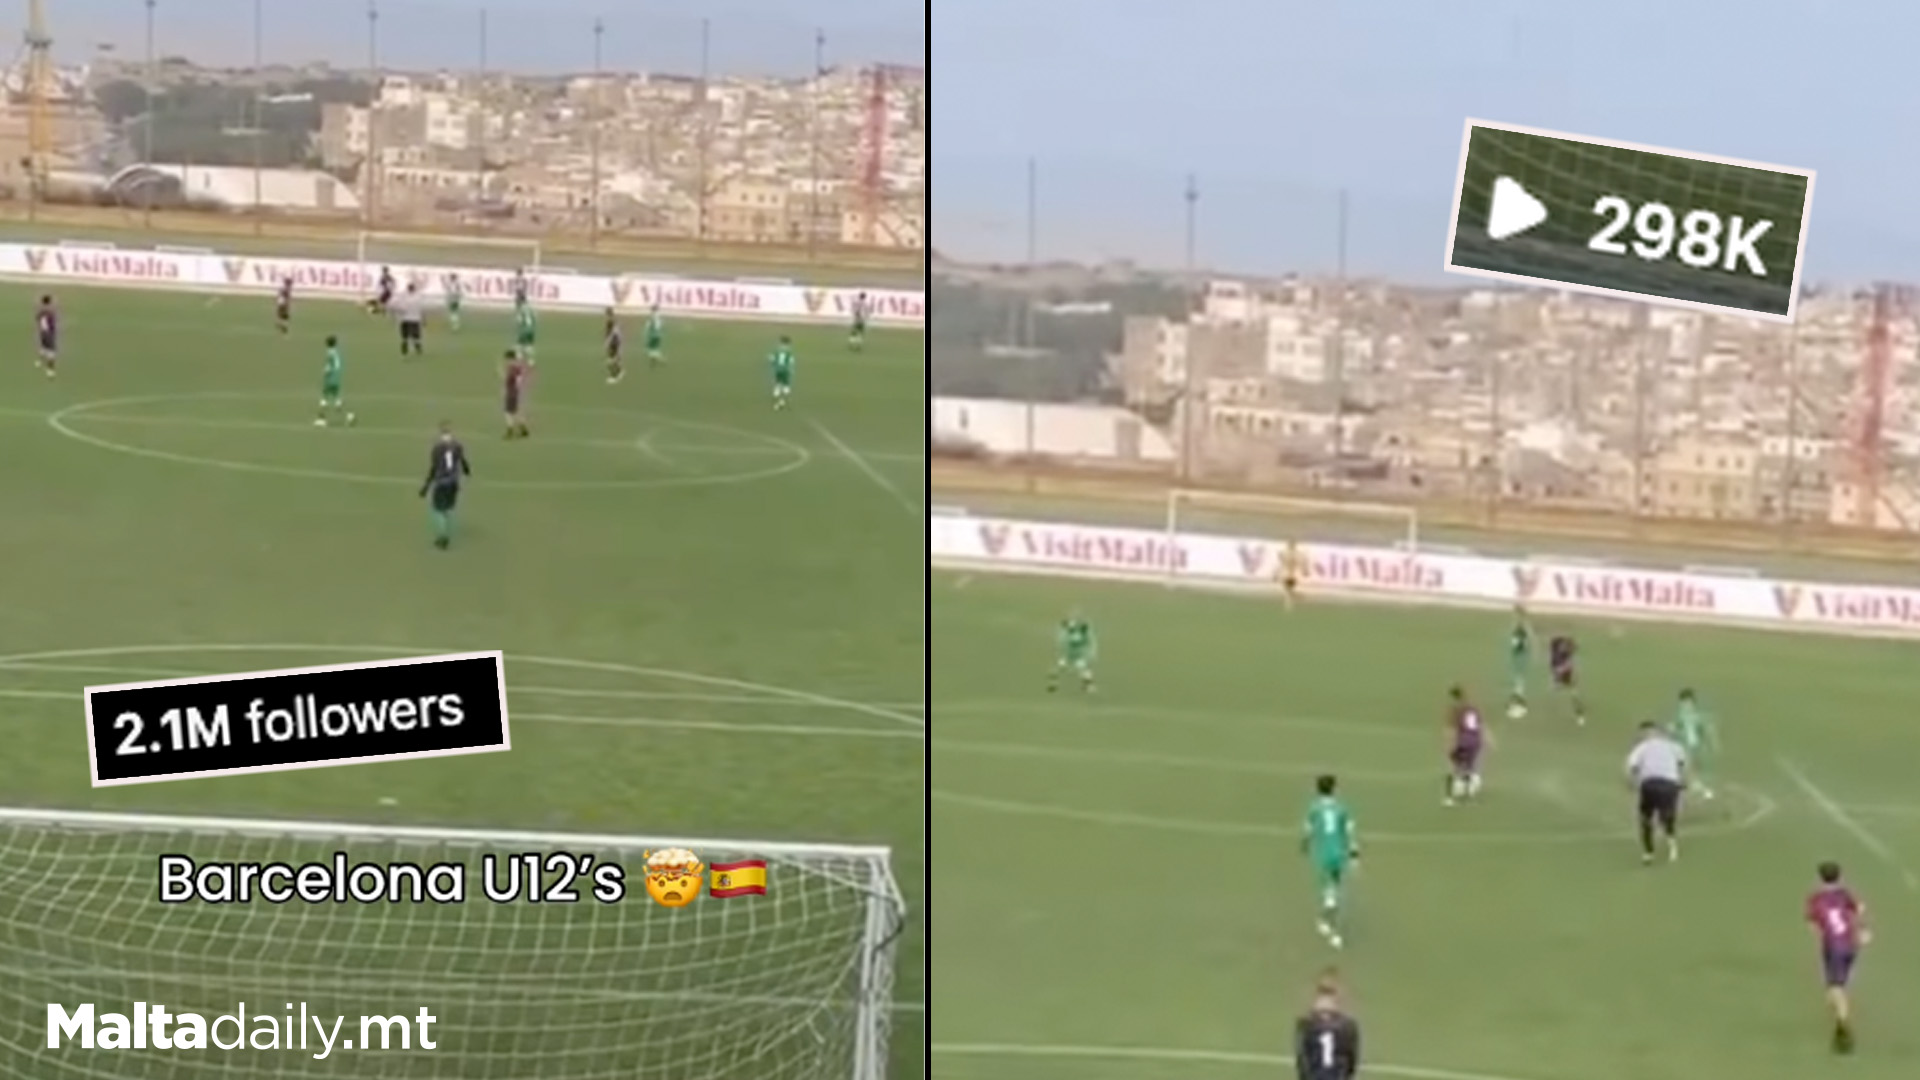 Video Of Barcelona U12s In Malta Resurfaces